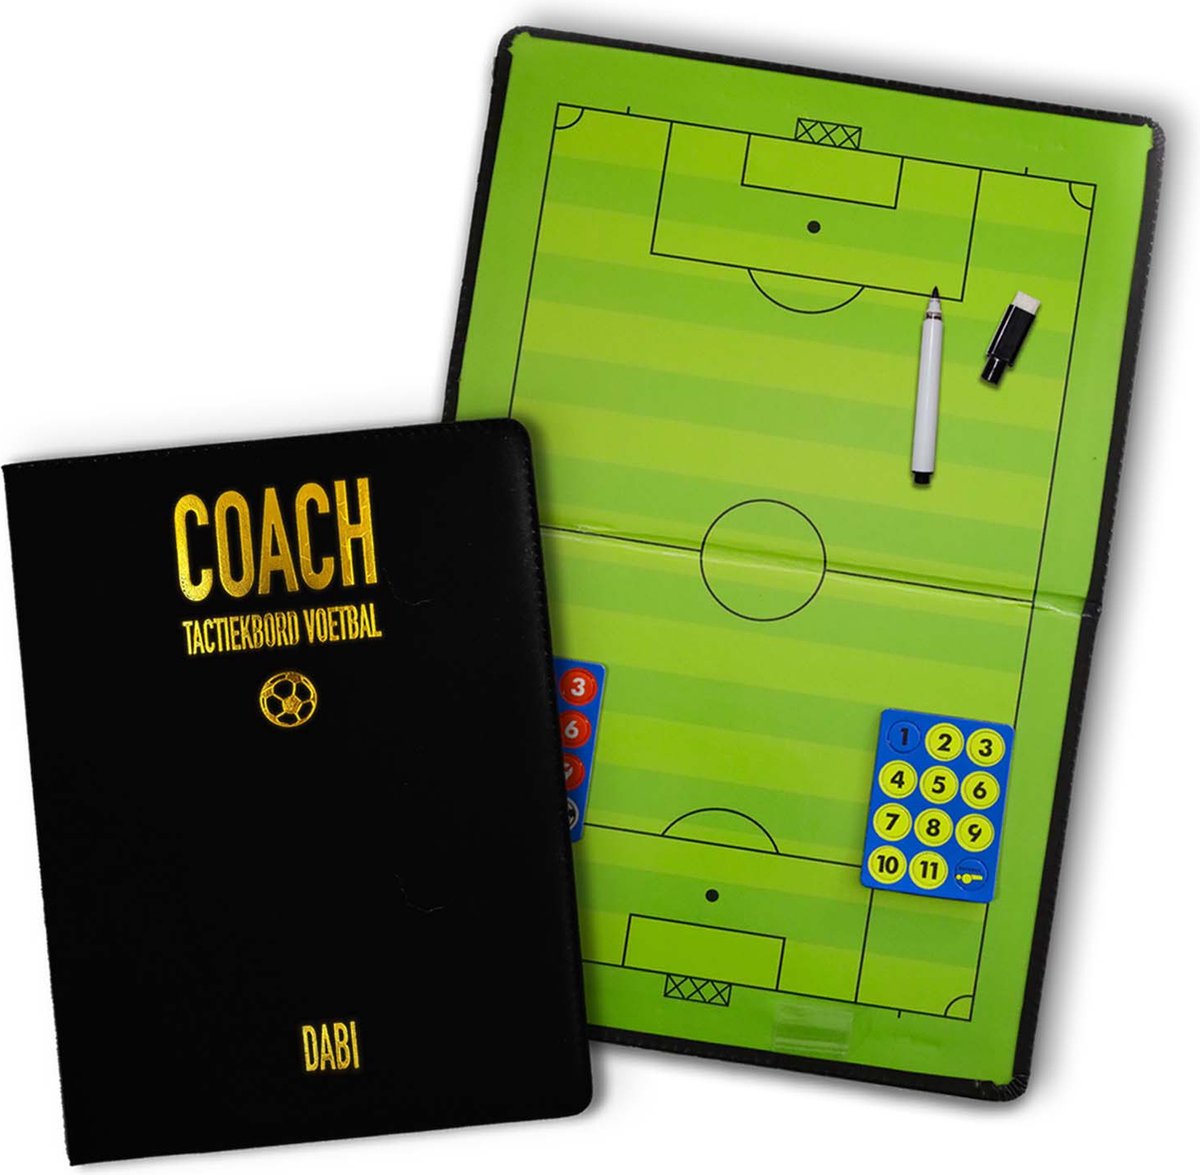 Tactiekbord Voetbal - Zwarte Coachmap inclusief magneten en uitwisbare stift - Coachbord - Tactiekmap voetbal - DABI